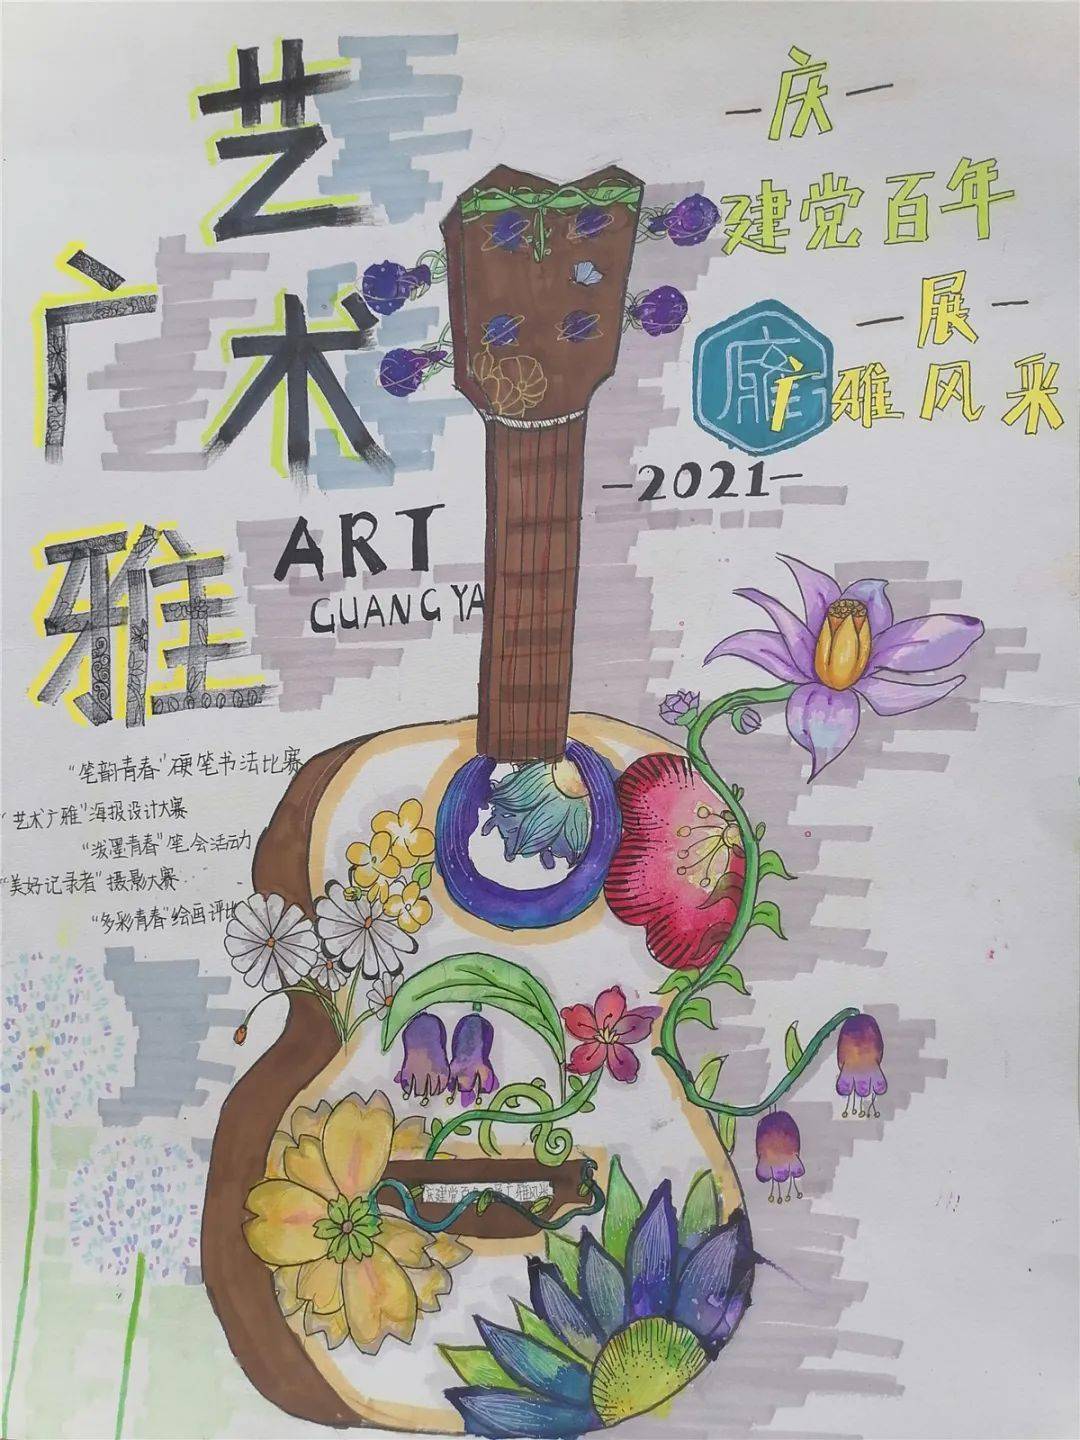 【广雅·艺术节】创意海报,精彩纷呈——青岛广雅中学